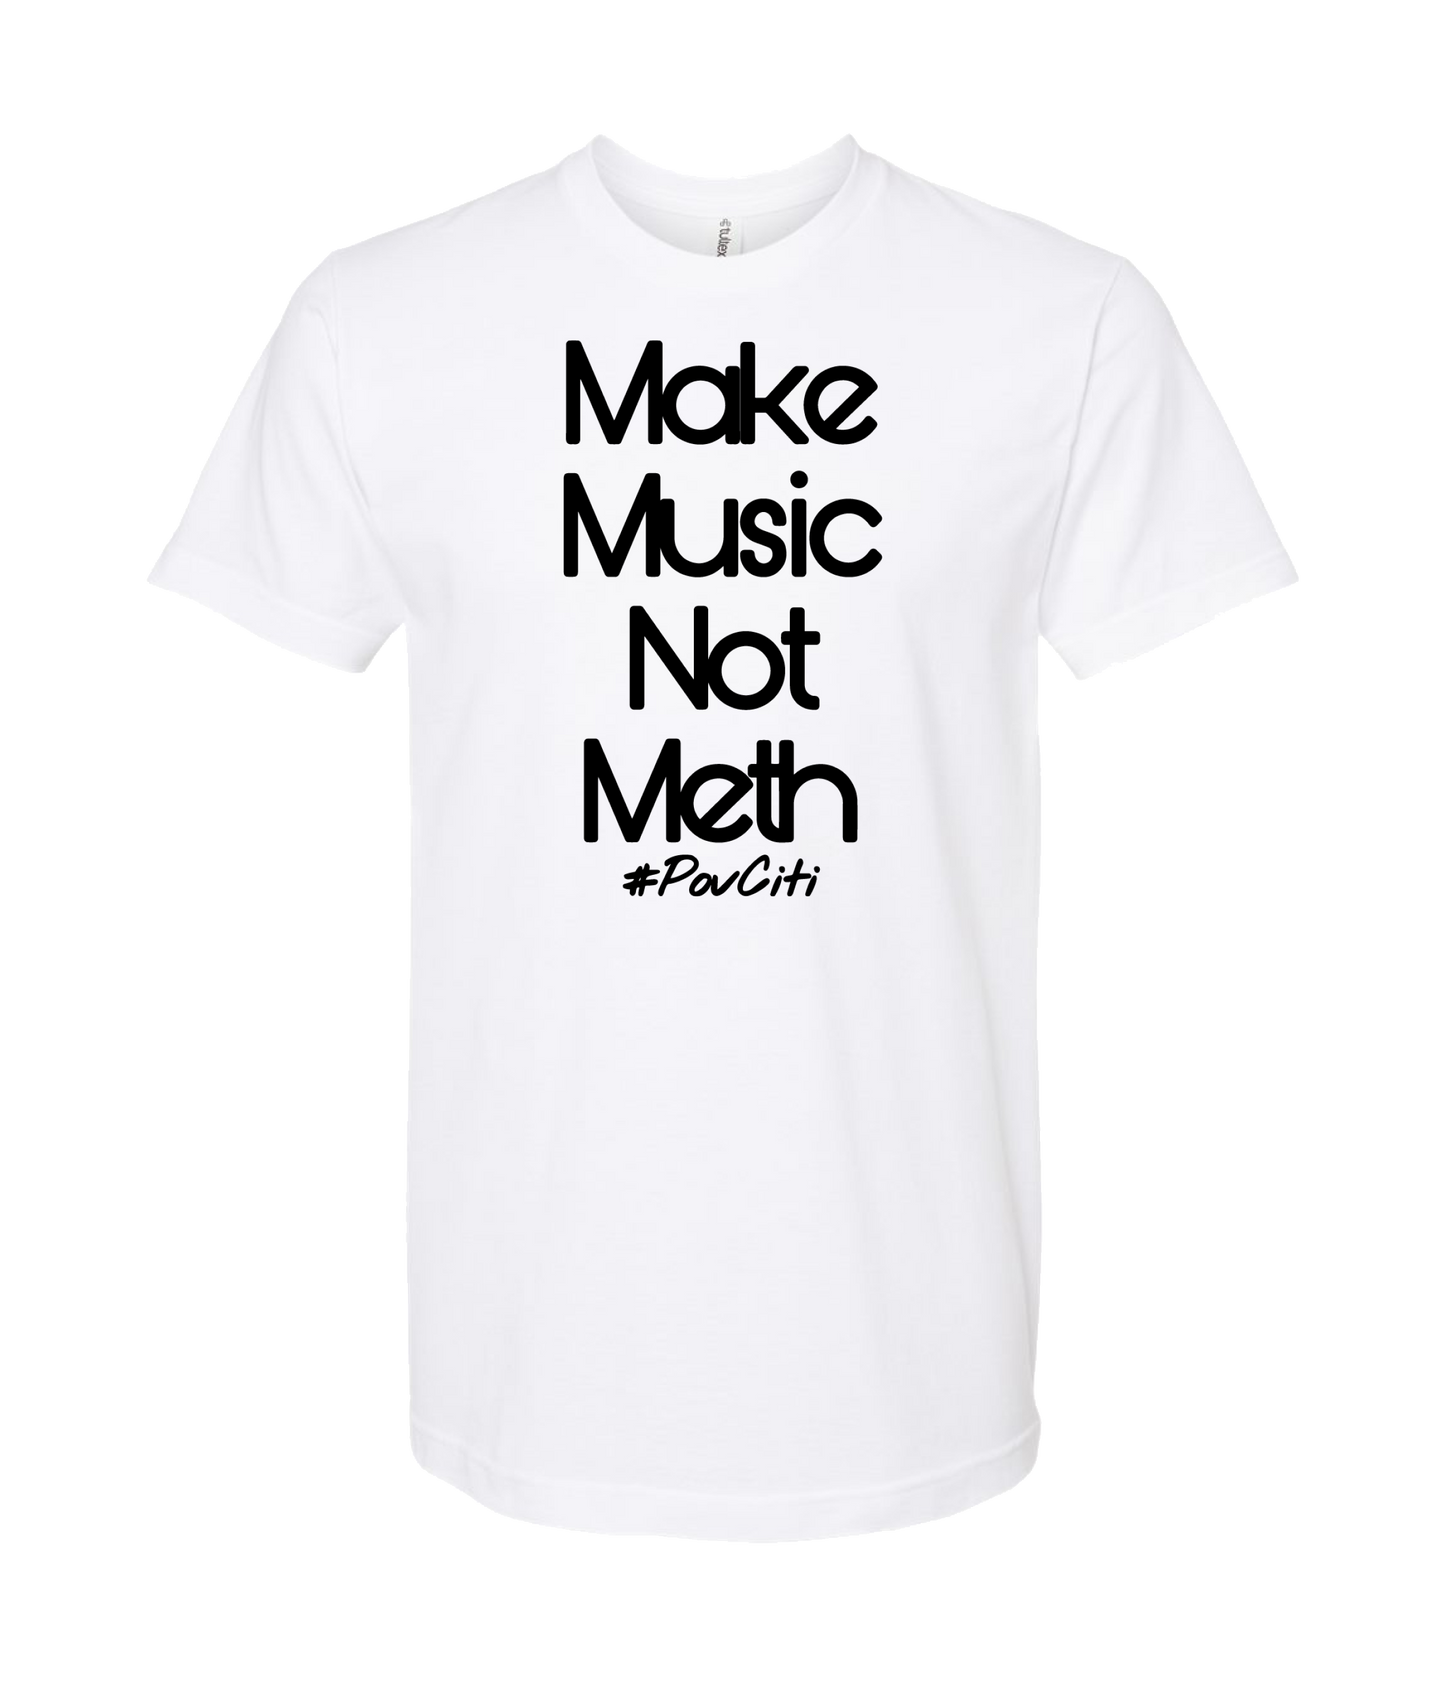 Ep!c of PovCiti - Make Music Not Meth - White T-Shirt